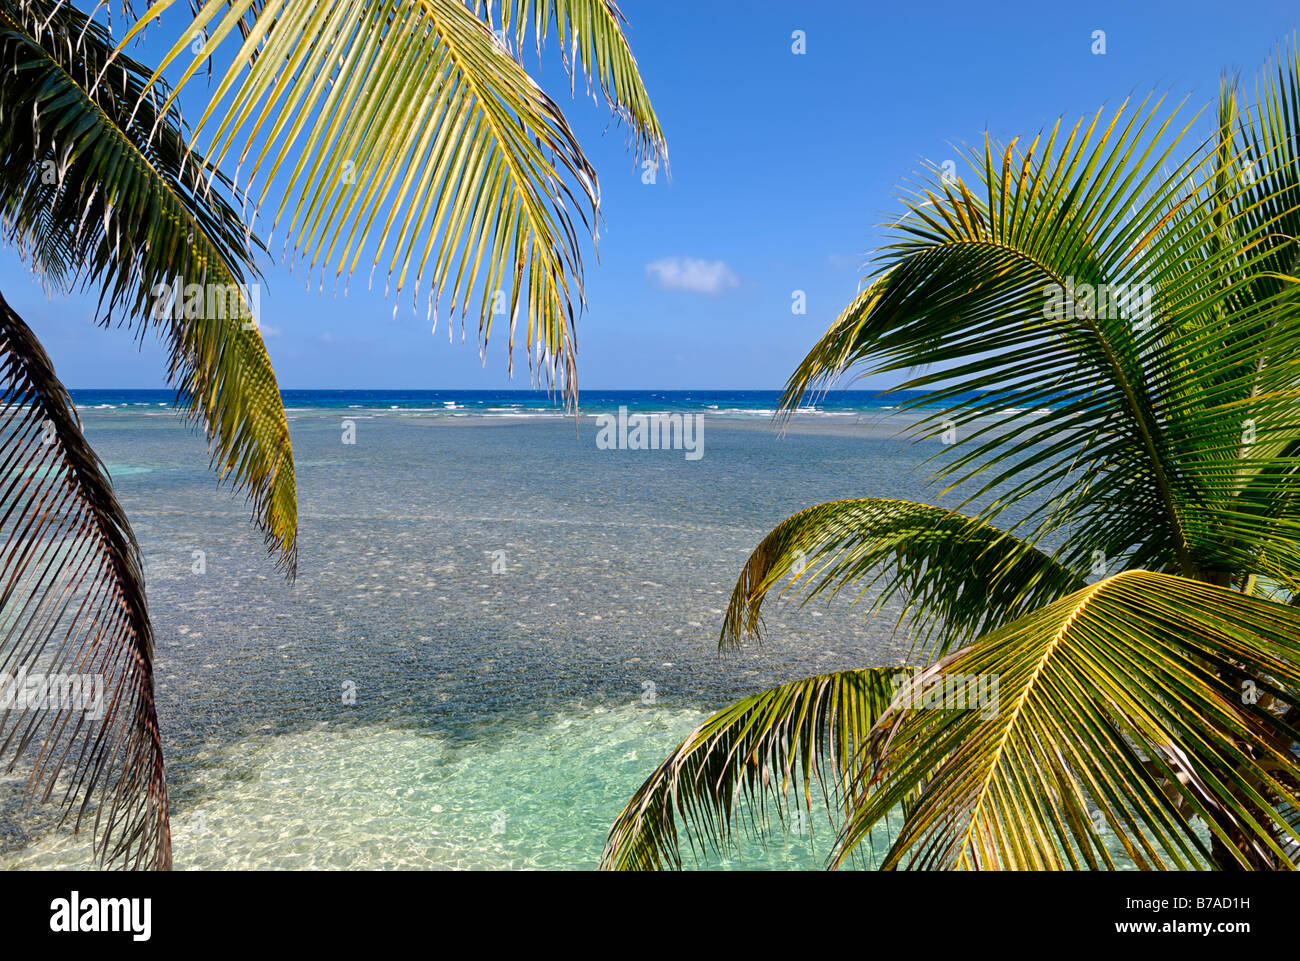 Vista attraverso le palme delle acque poco profonde della barriera corallina di Caye, Mar dei Caraibi, Belize, America Centrale Foto Stock